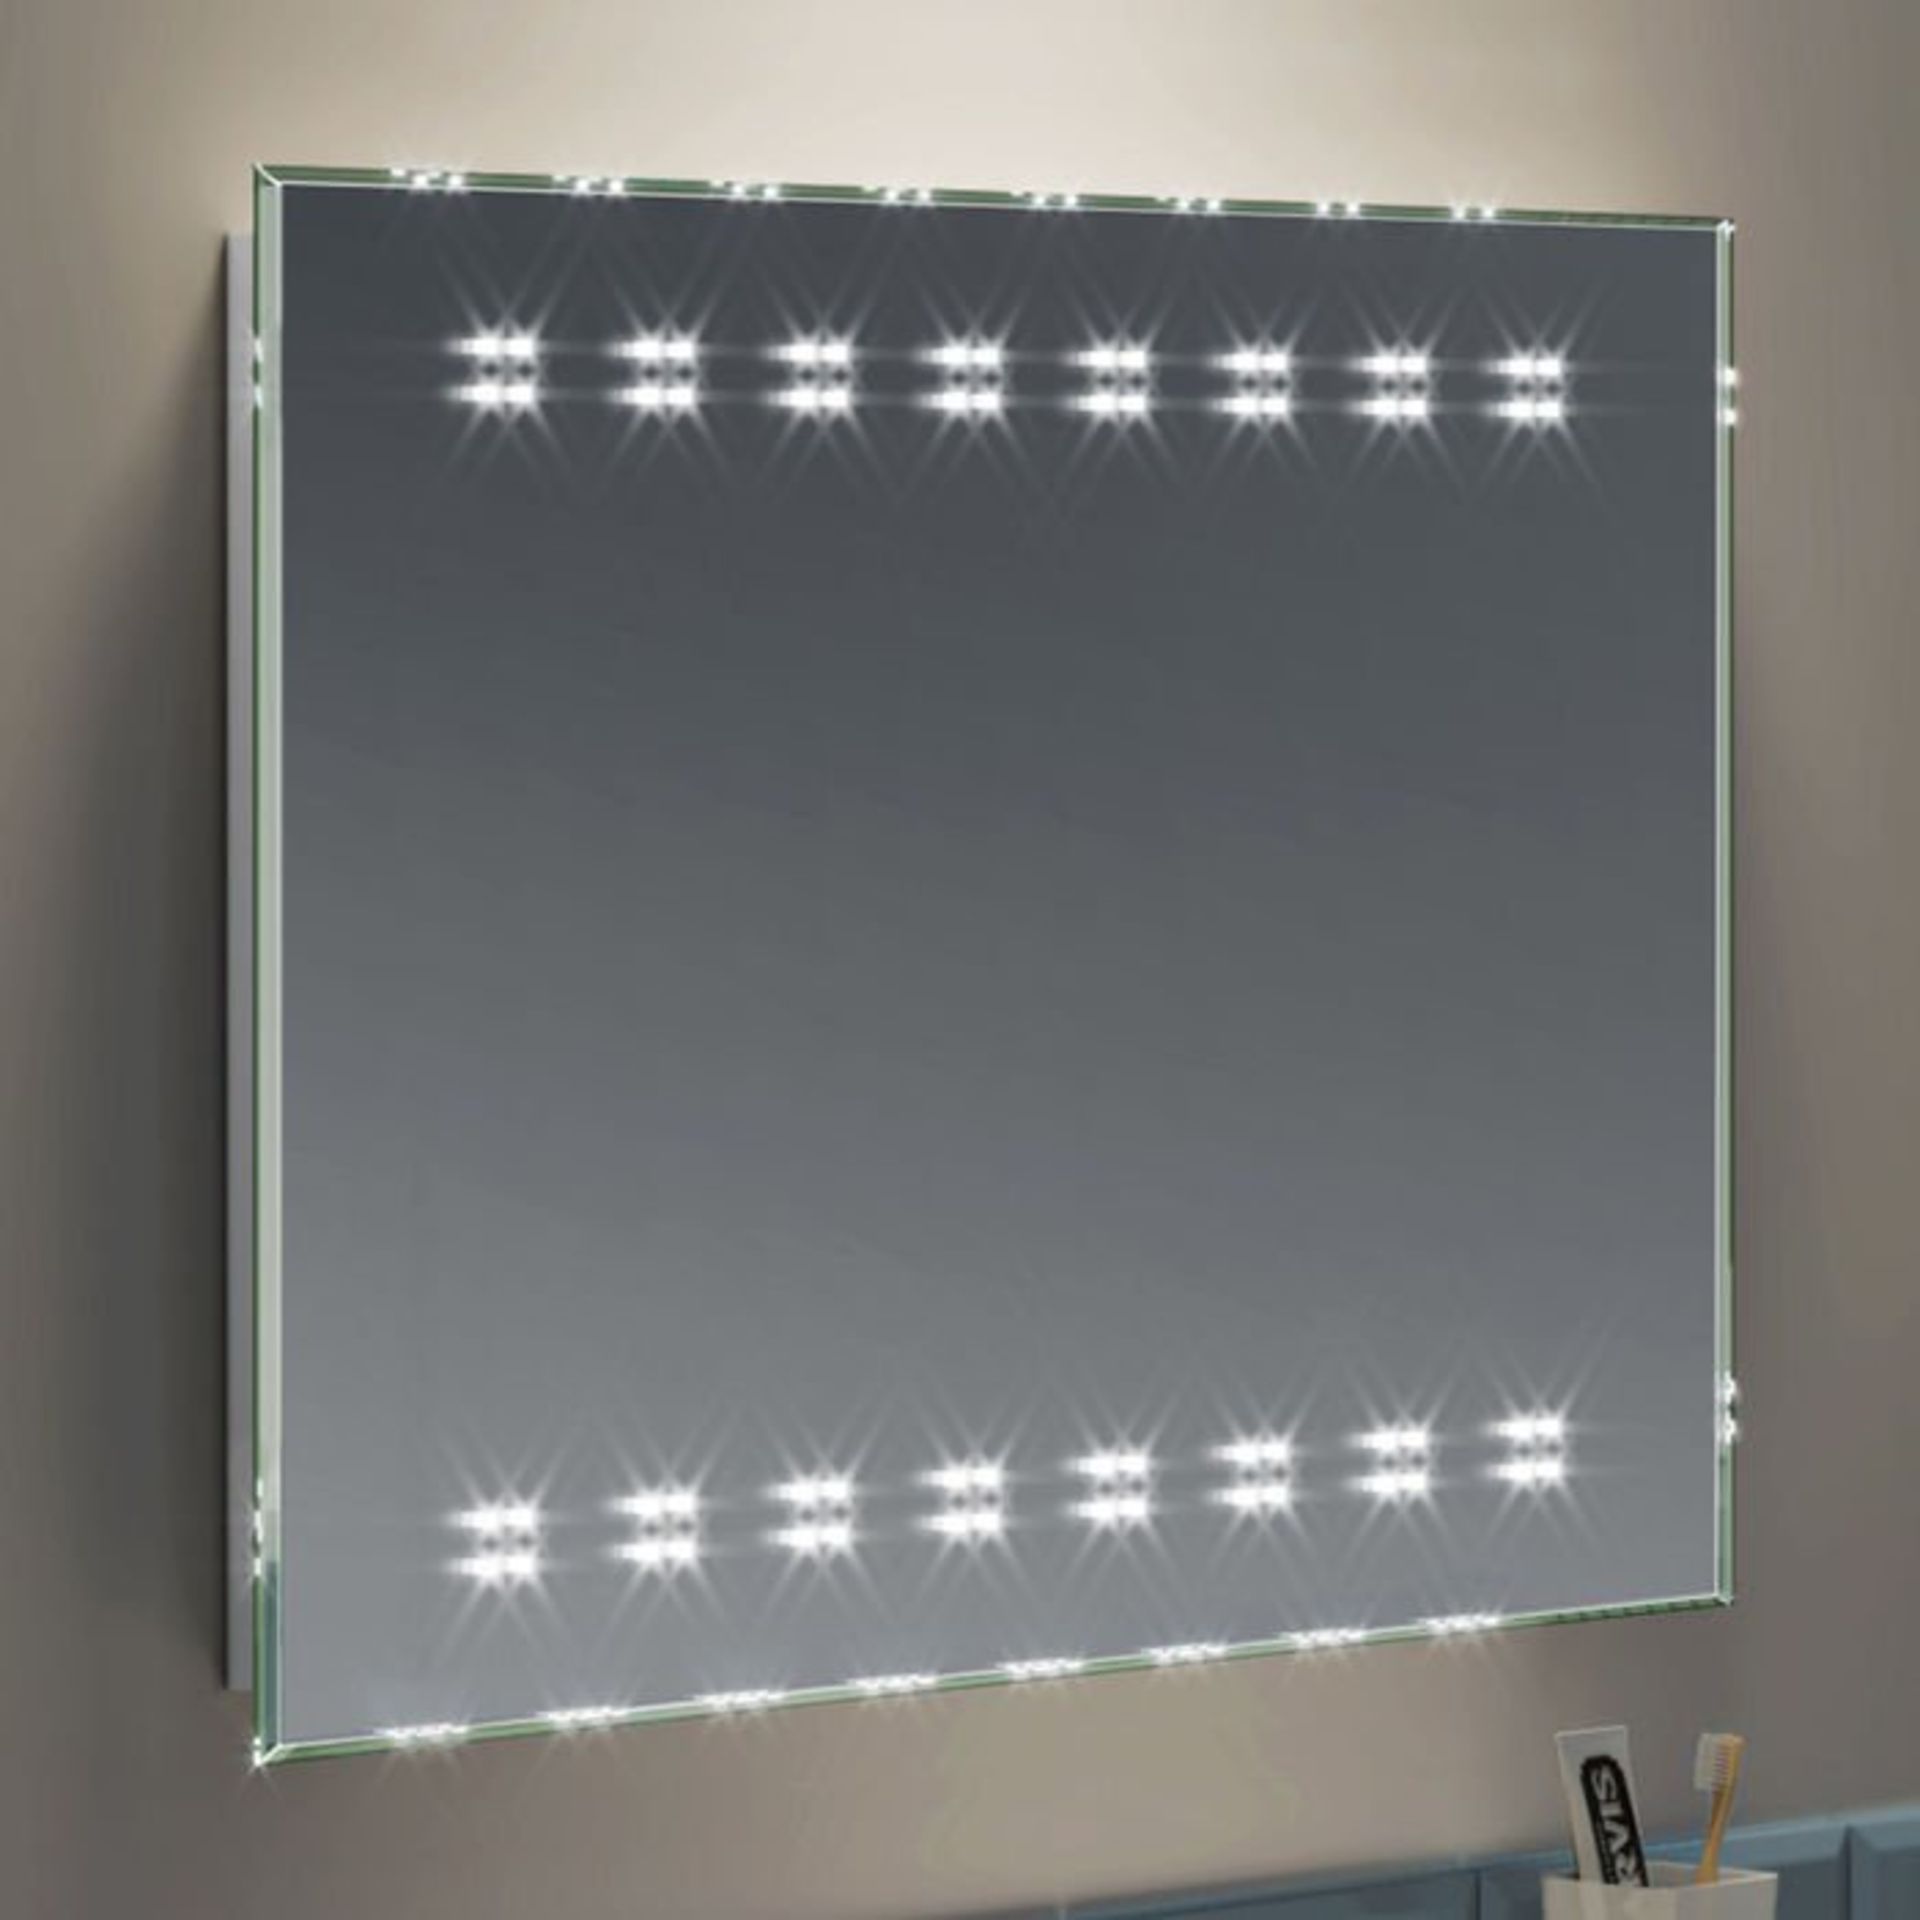 (H17) 700x500mm Galactic Designer Illuminated LED Mirror RRP £324.99 Energy efficient LED lighting - Image 2 of 5